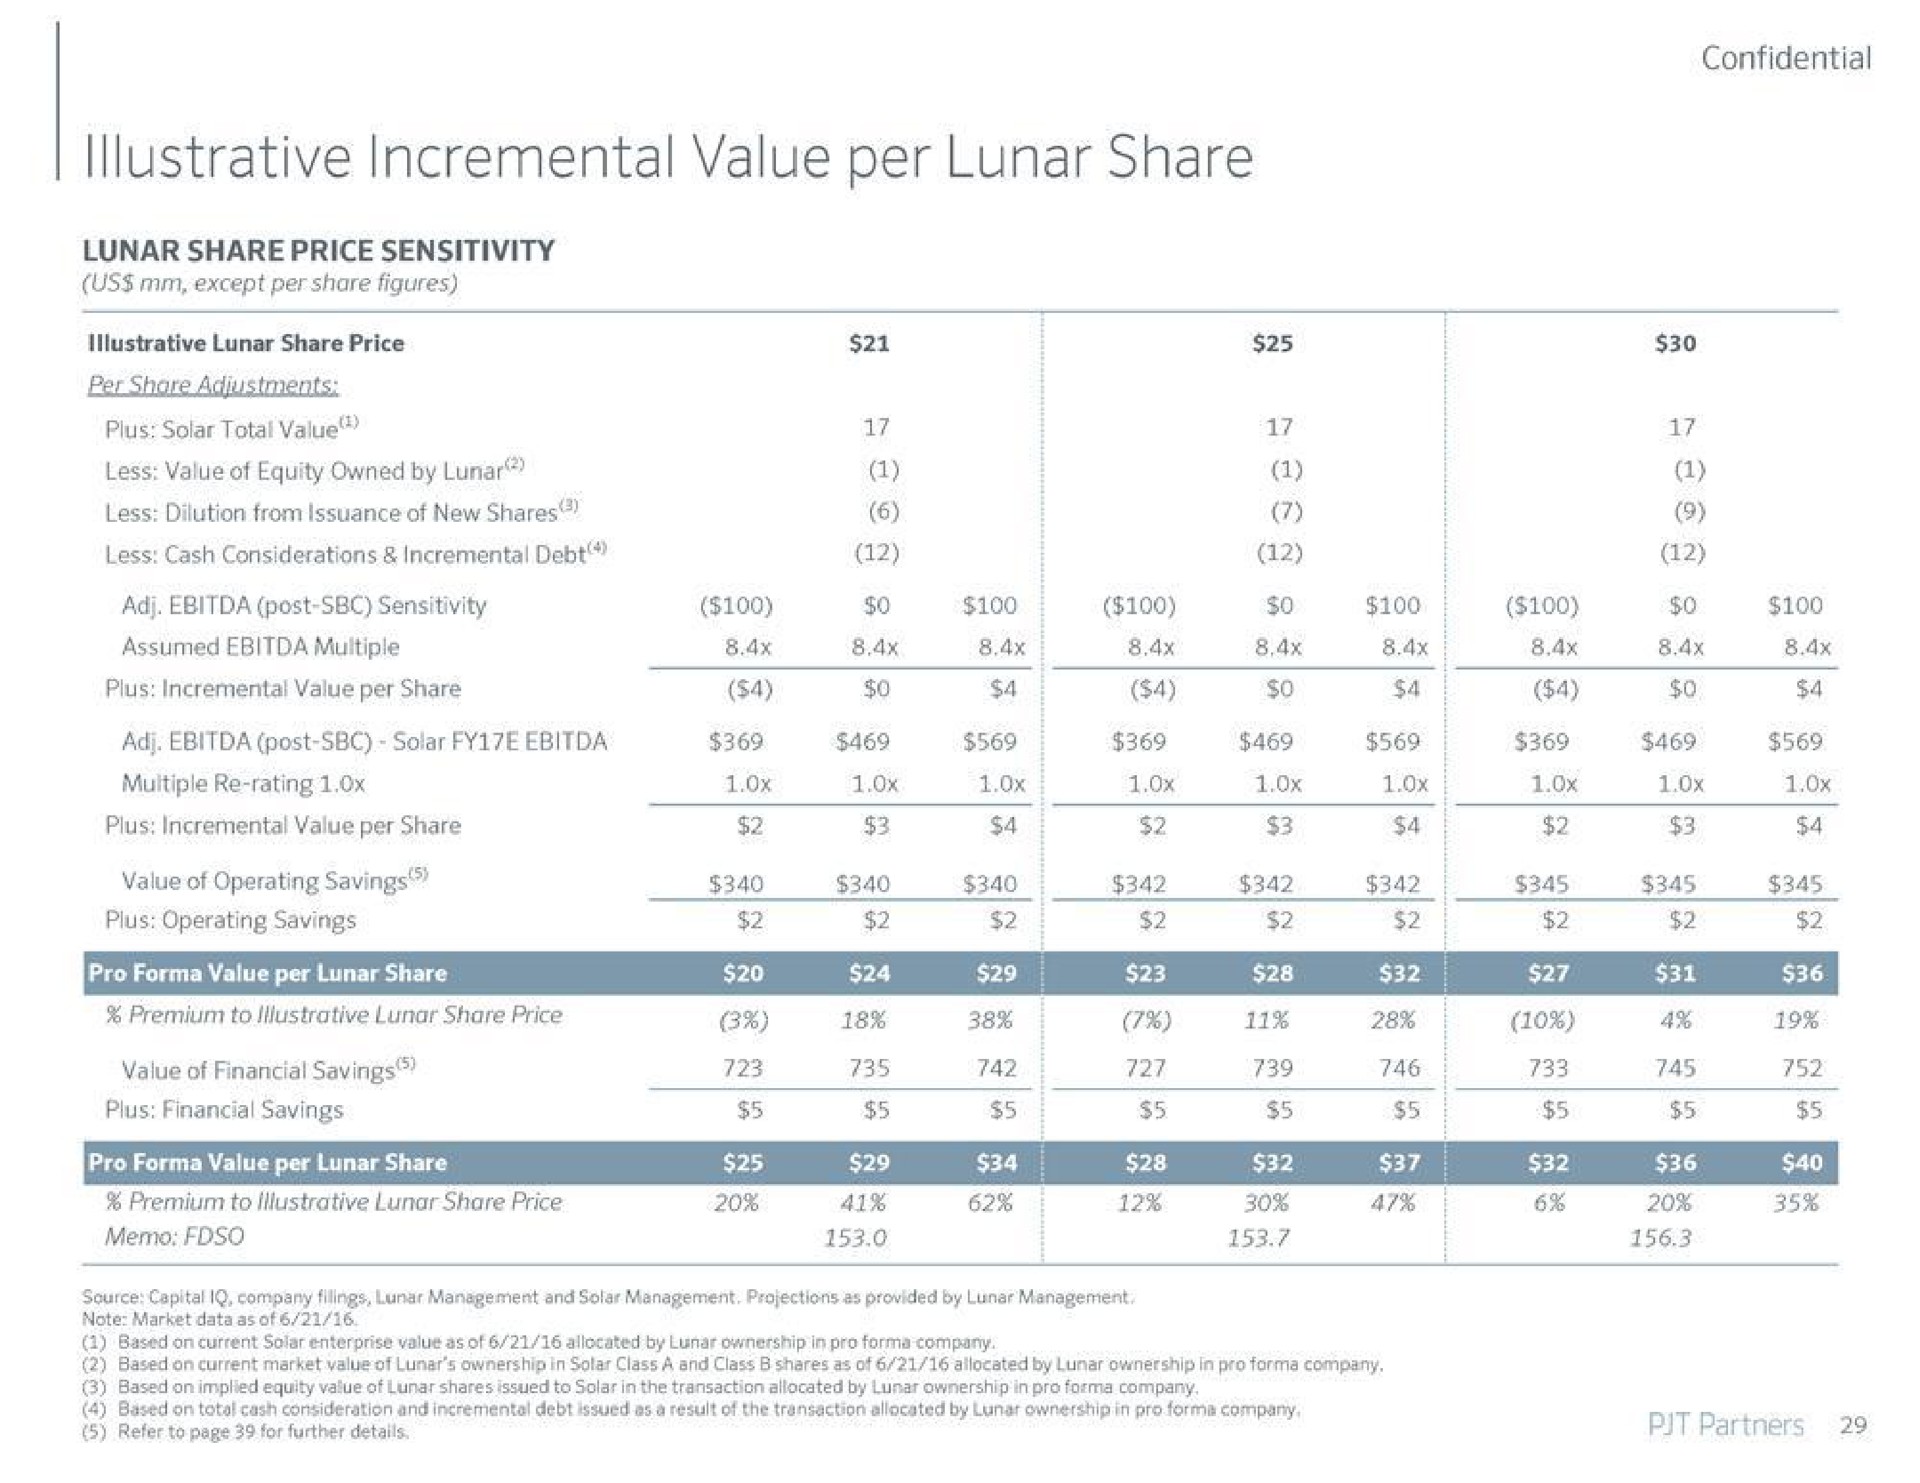 incremental value per lunar share | PJT Partners